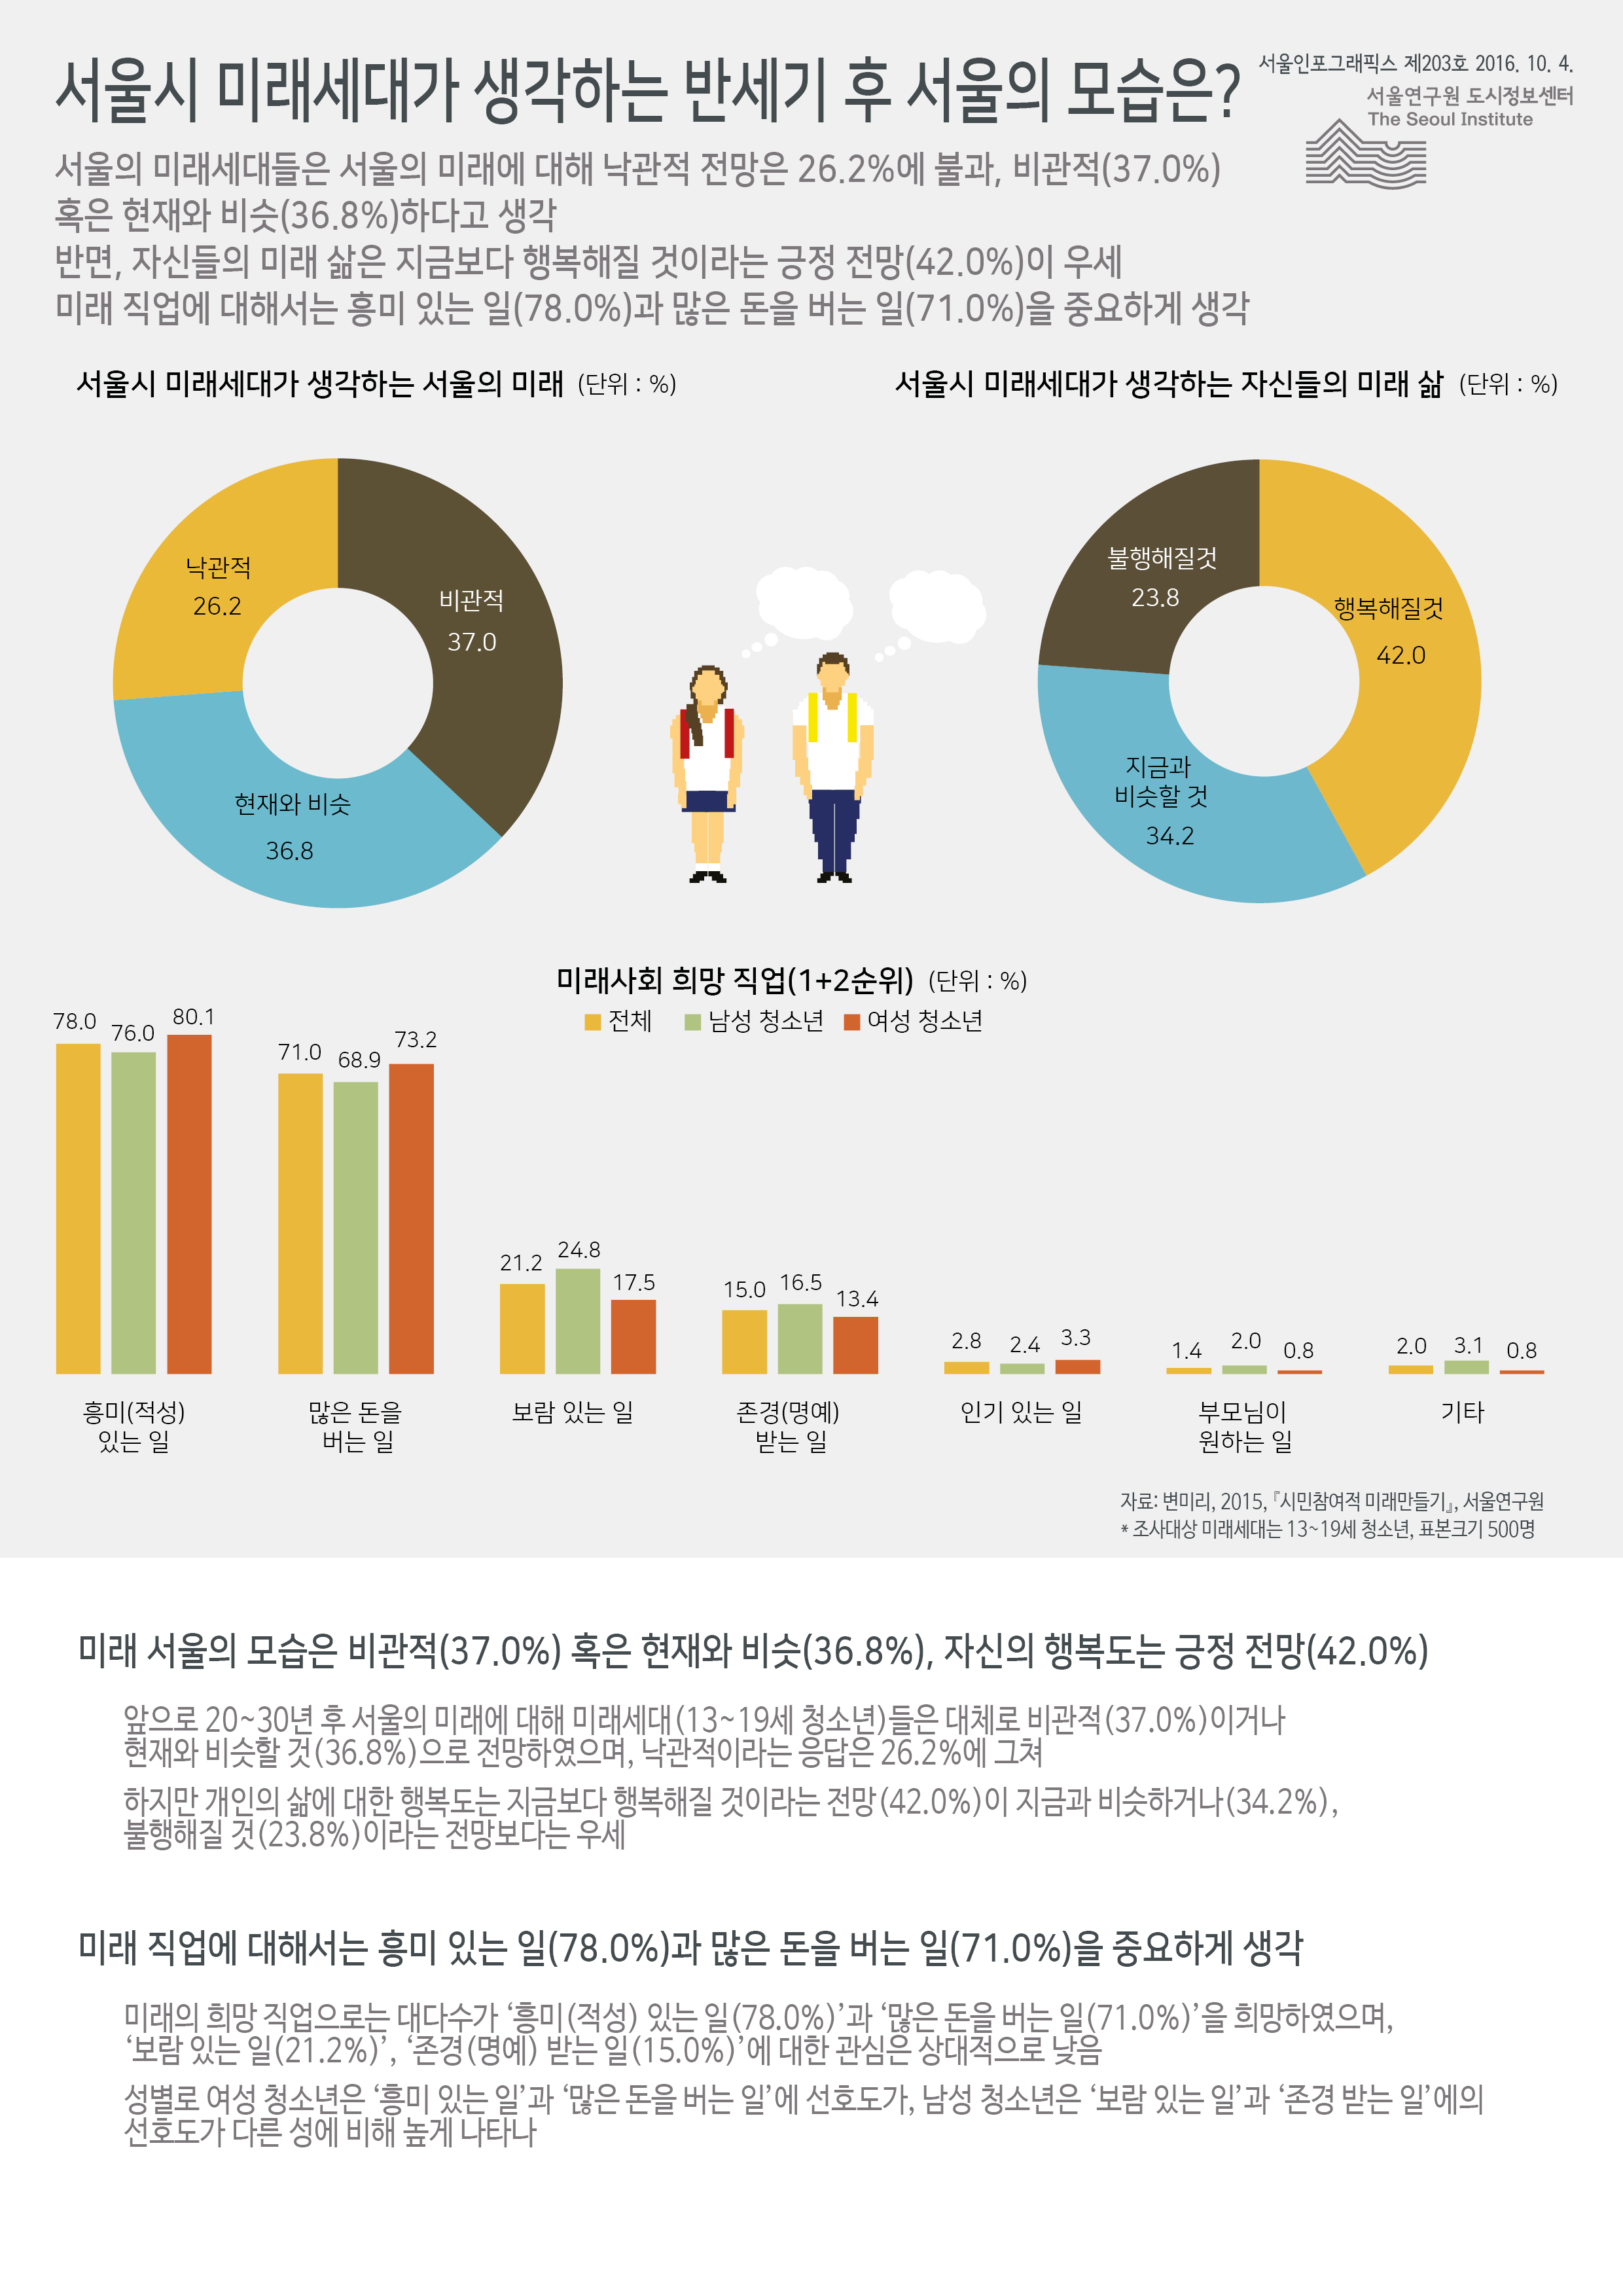 서울시 미래세대가 생각하는 반세기 후 서울의 모습은? 서울인포그래픽스 제203호 2016년 10월 4일 서울의 미래세대들은 서울의 미래에 대해 낙관적 전망은 26.2%에 불과, 비관적(37.0%) 혹은 현재와 비슷(36.8%)하다고 생각 반면, 자신들의 미래 삶은 지금보다 행복해질 것이라는 긍정 전망(42.0%)이 우세. 미래 직업에 대해서는 흥미 있는 일(78.0%)과 많은 돈을 버는 일(71.0%)을 중요하게 생각함으로 정리 될 수 있습니다. 인포그래픽으로 제공되는 그래픽은 하단에 표로 자세히 제공됩니다.